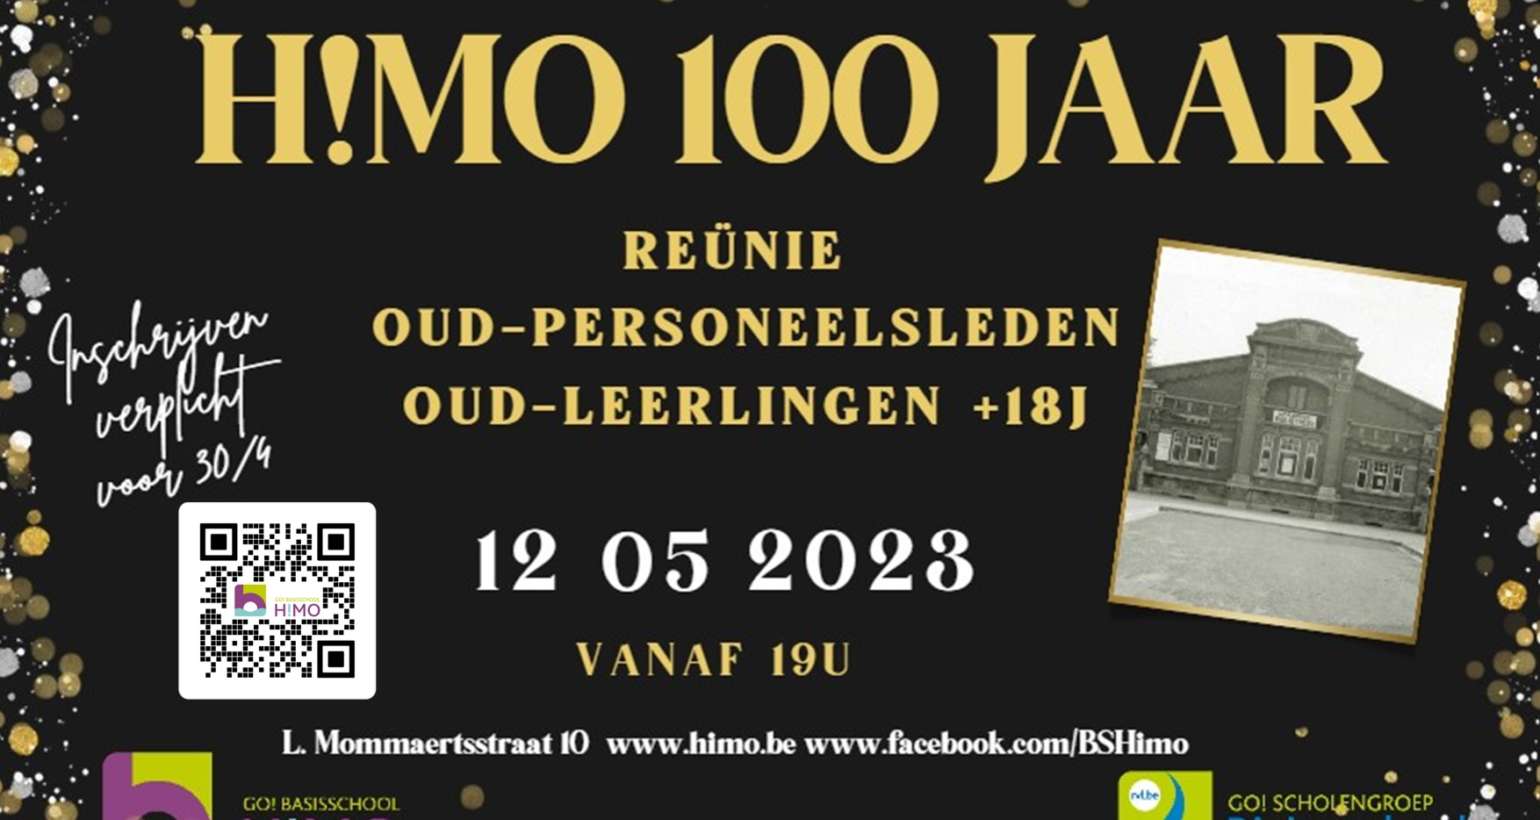 HIMO bestaat 100 jaar!